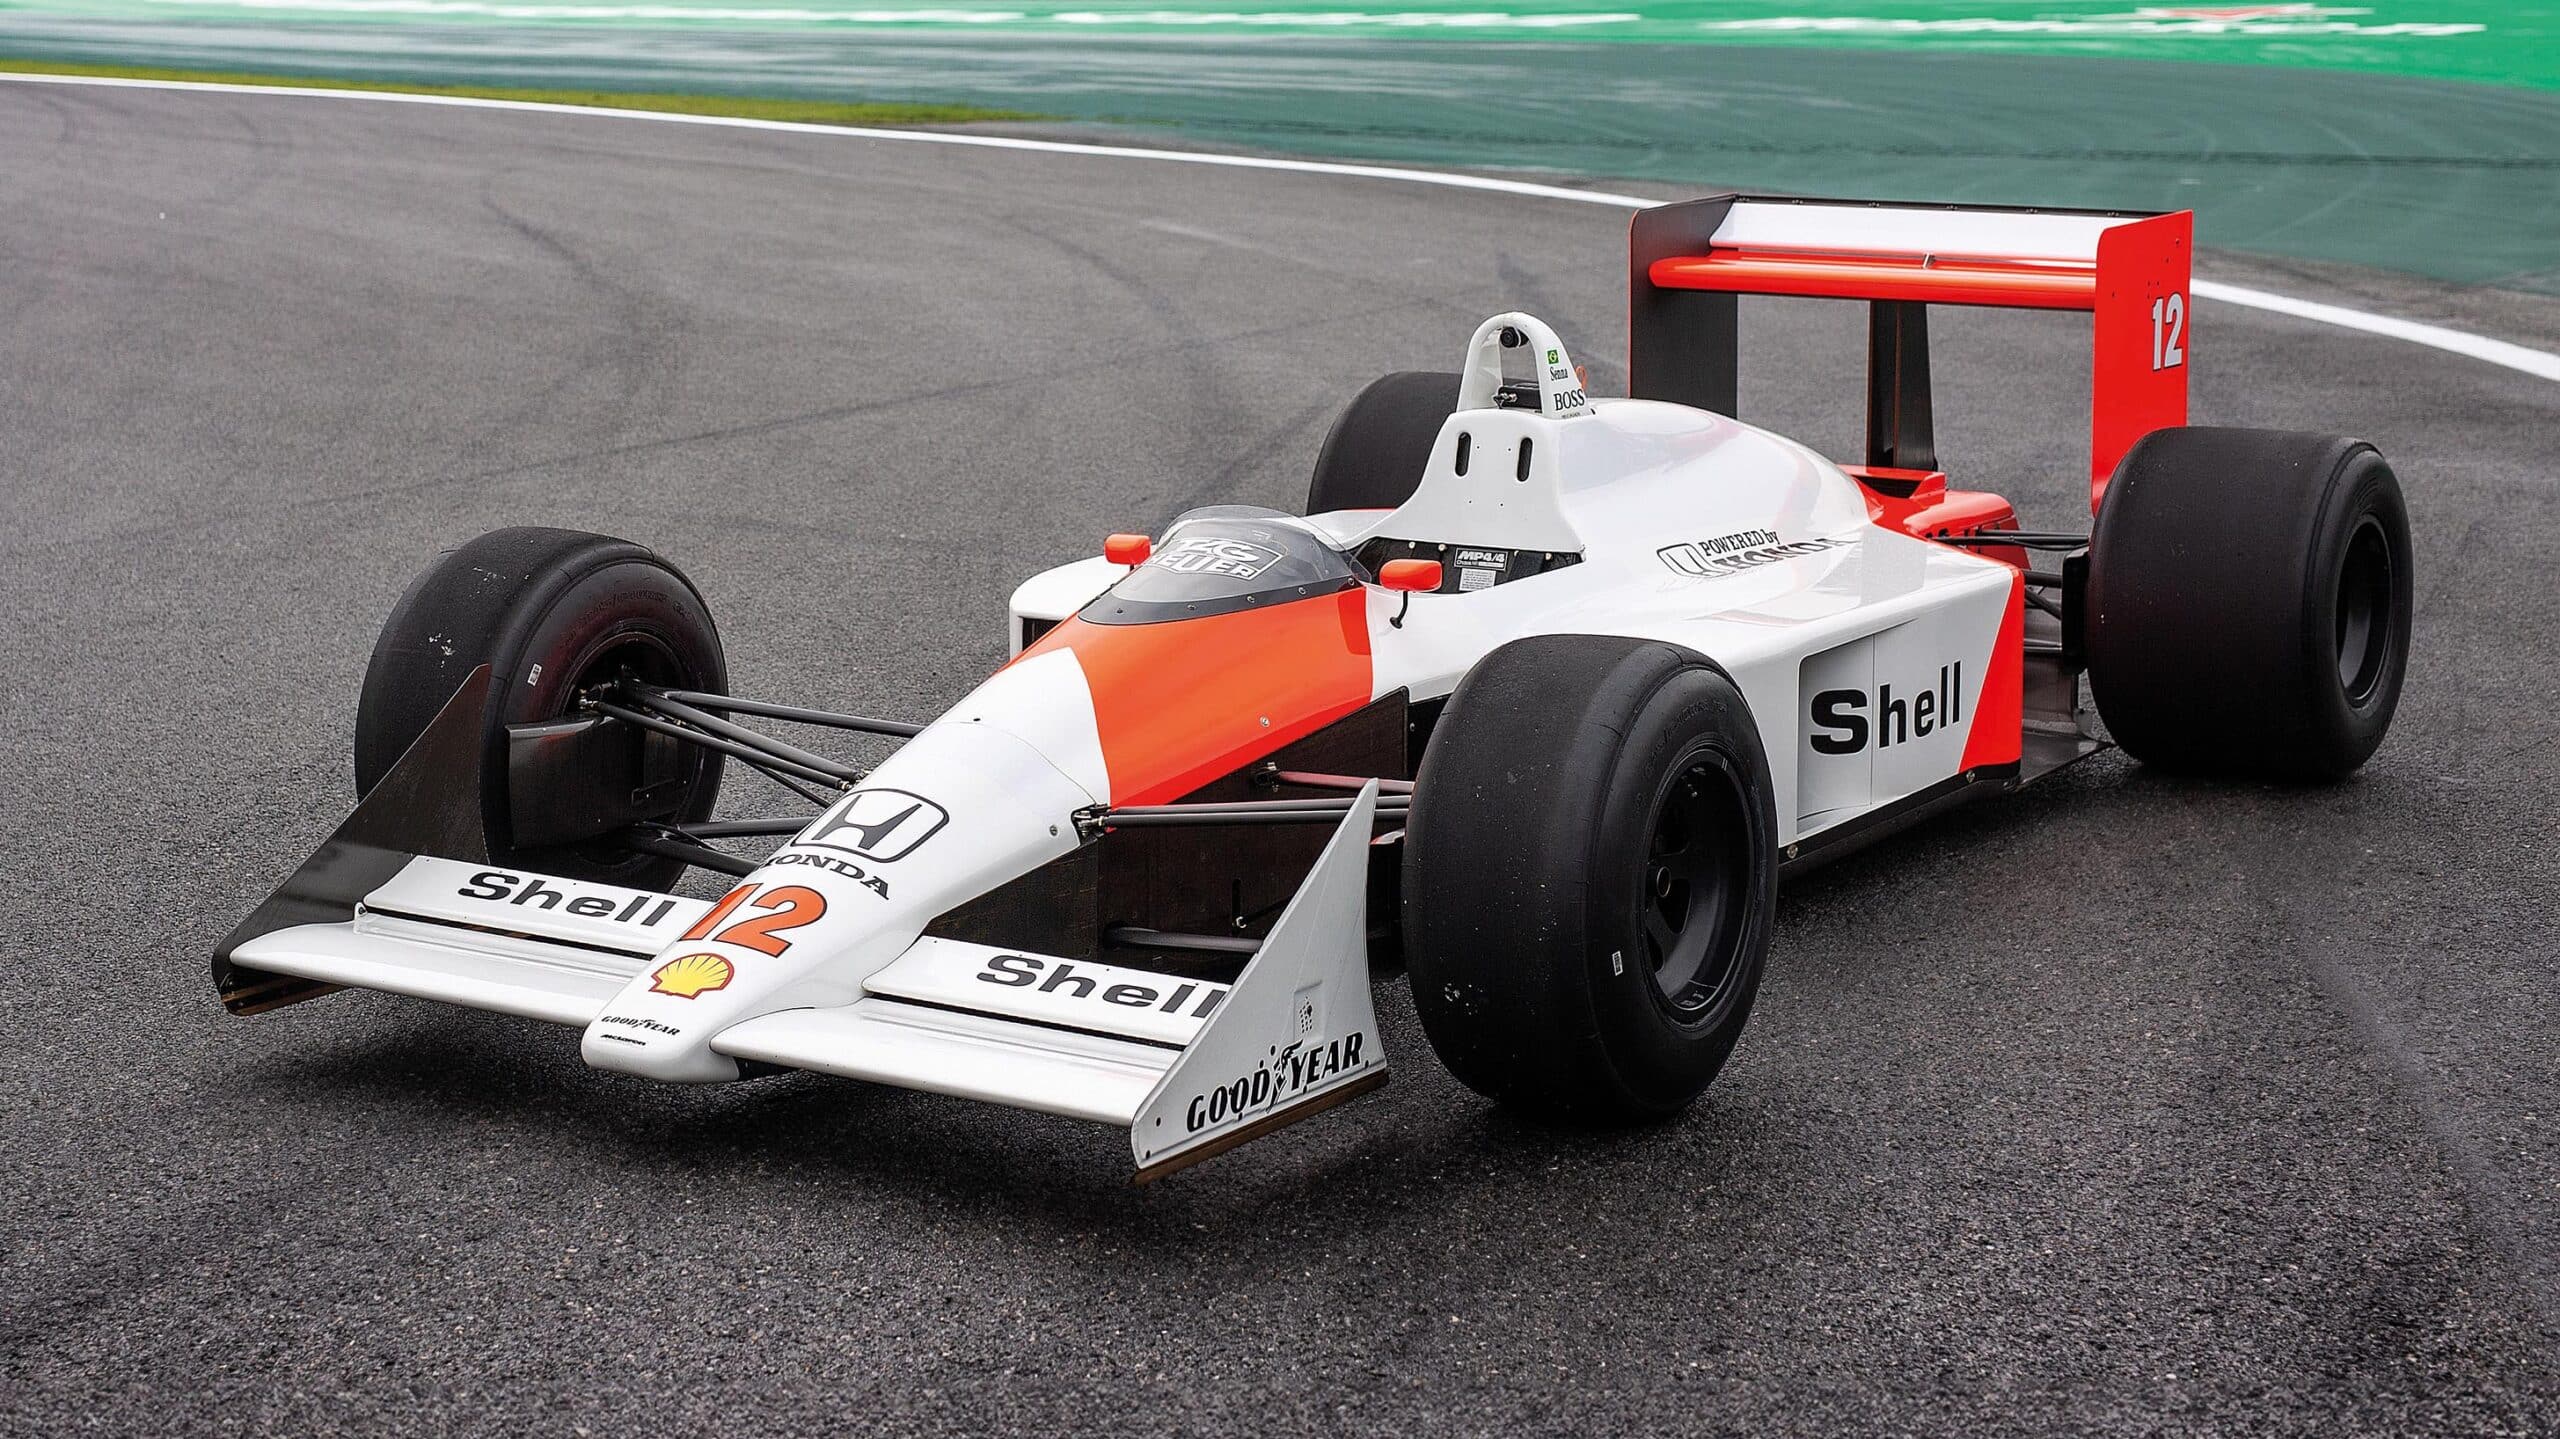 McLaren MP4 4 on Interlagos circuit